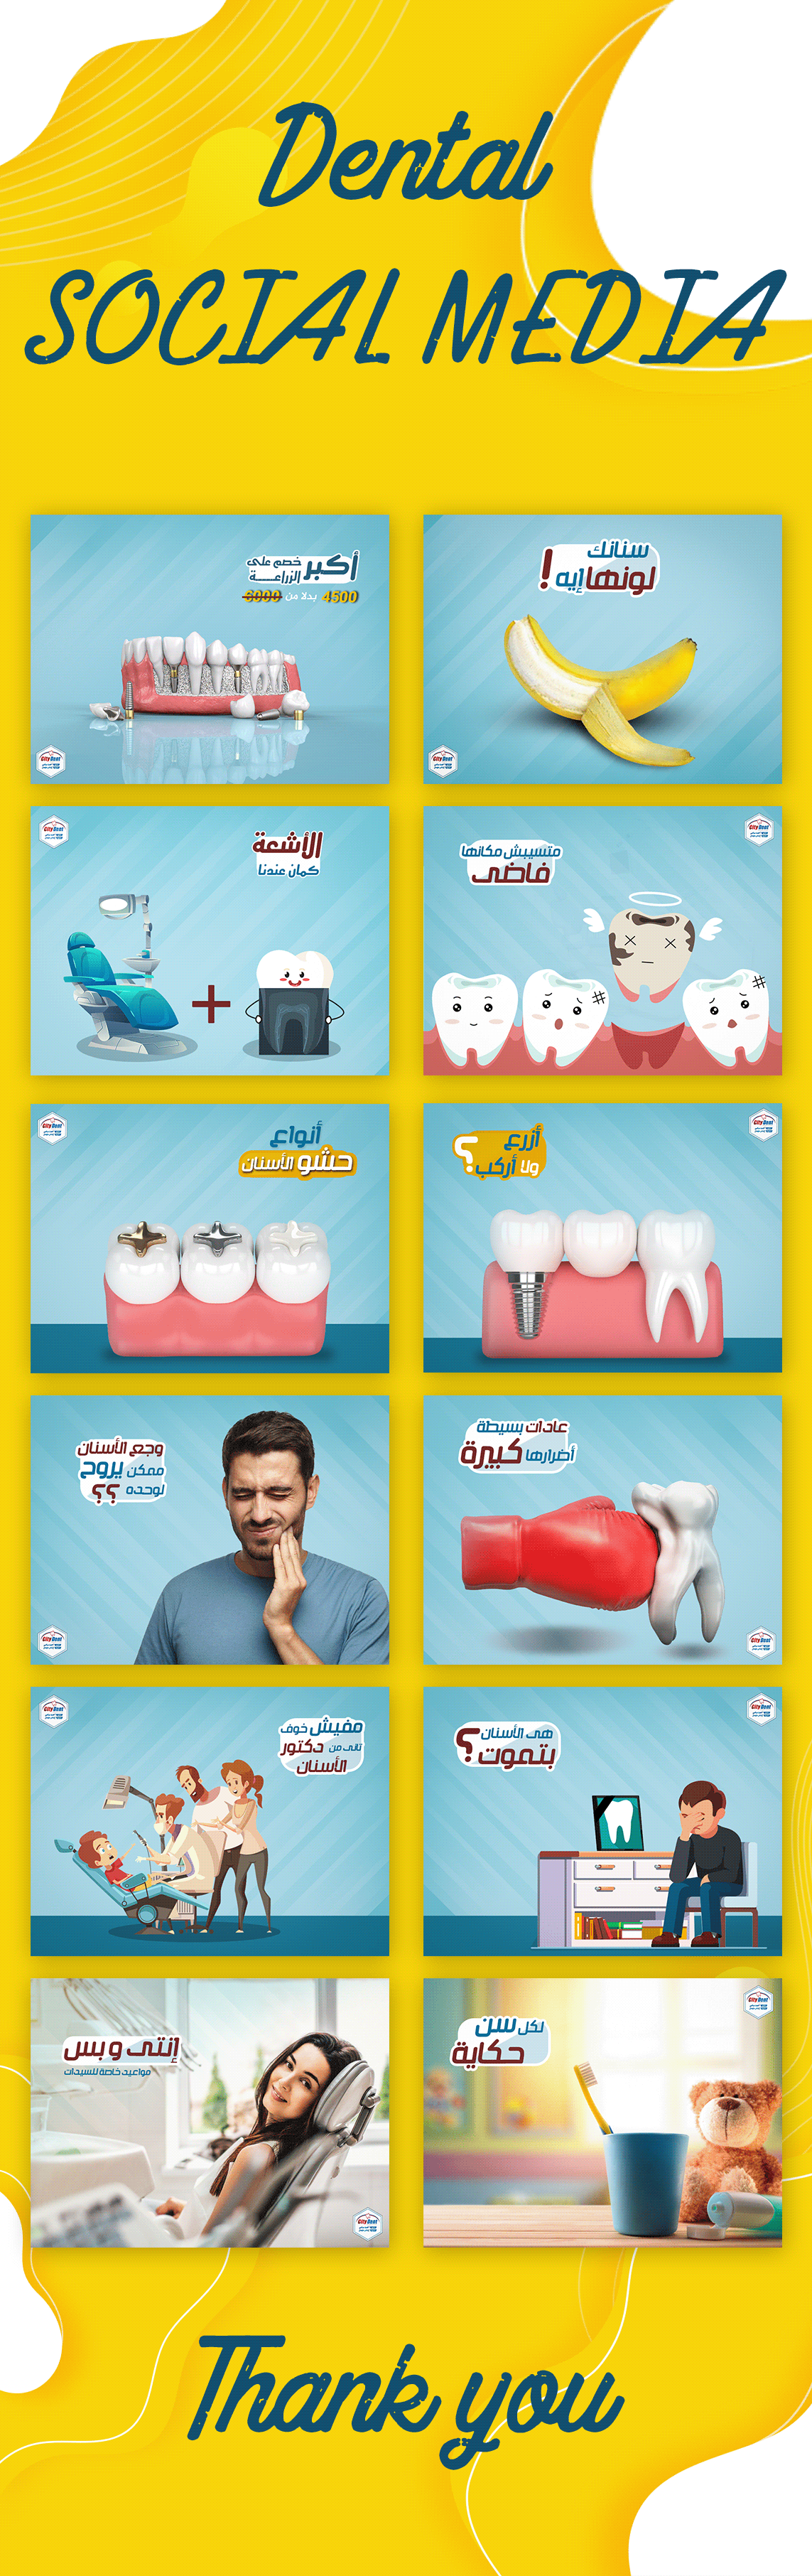 dental social media dental teeth dentist social media